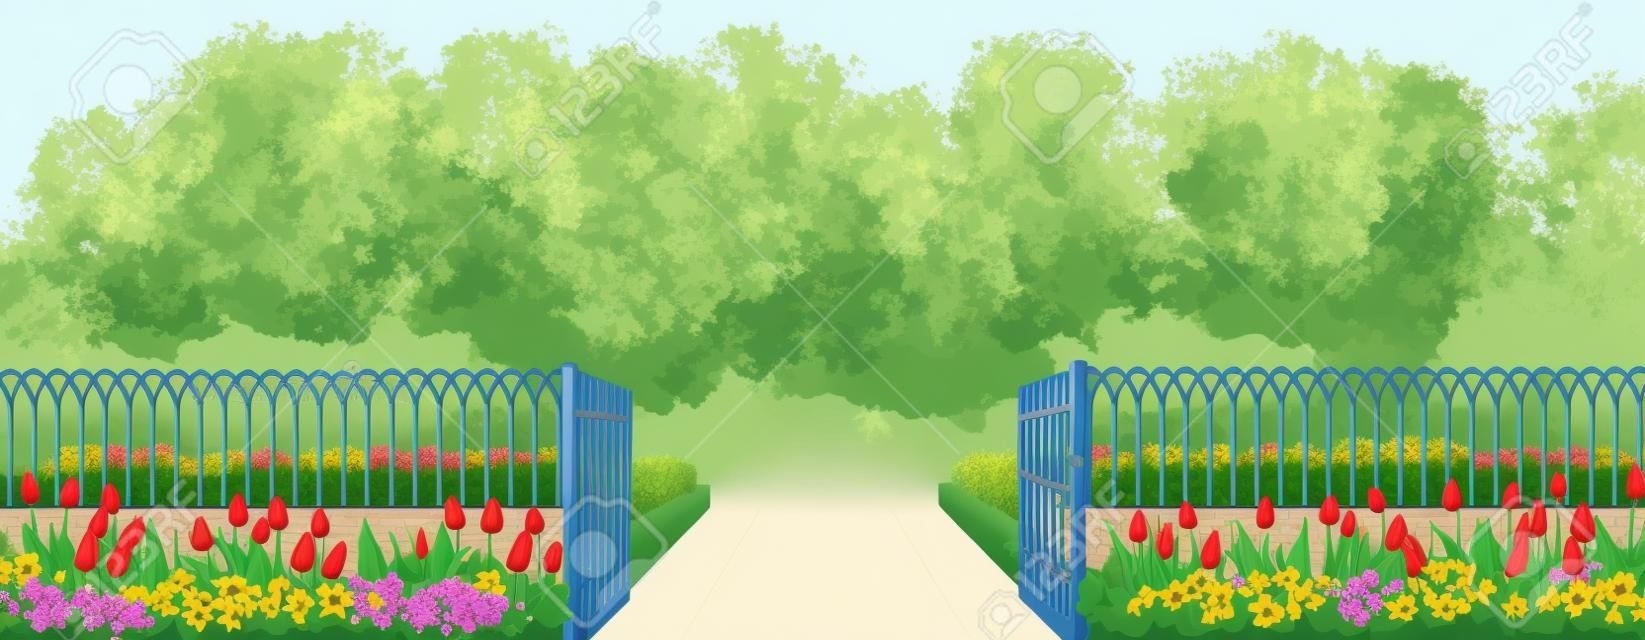 Recinzione d'ingresso con un cancello, un'aiuola e fiori tulipani in stile cartoon illustrazione vettoriale